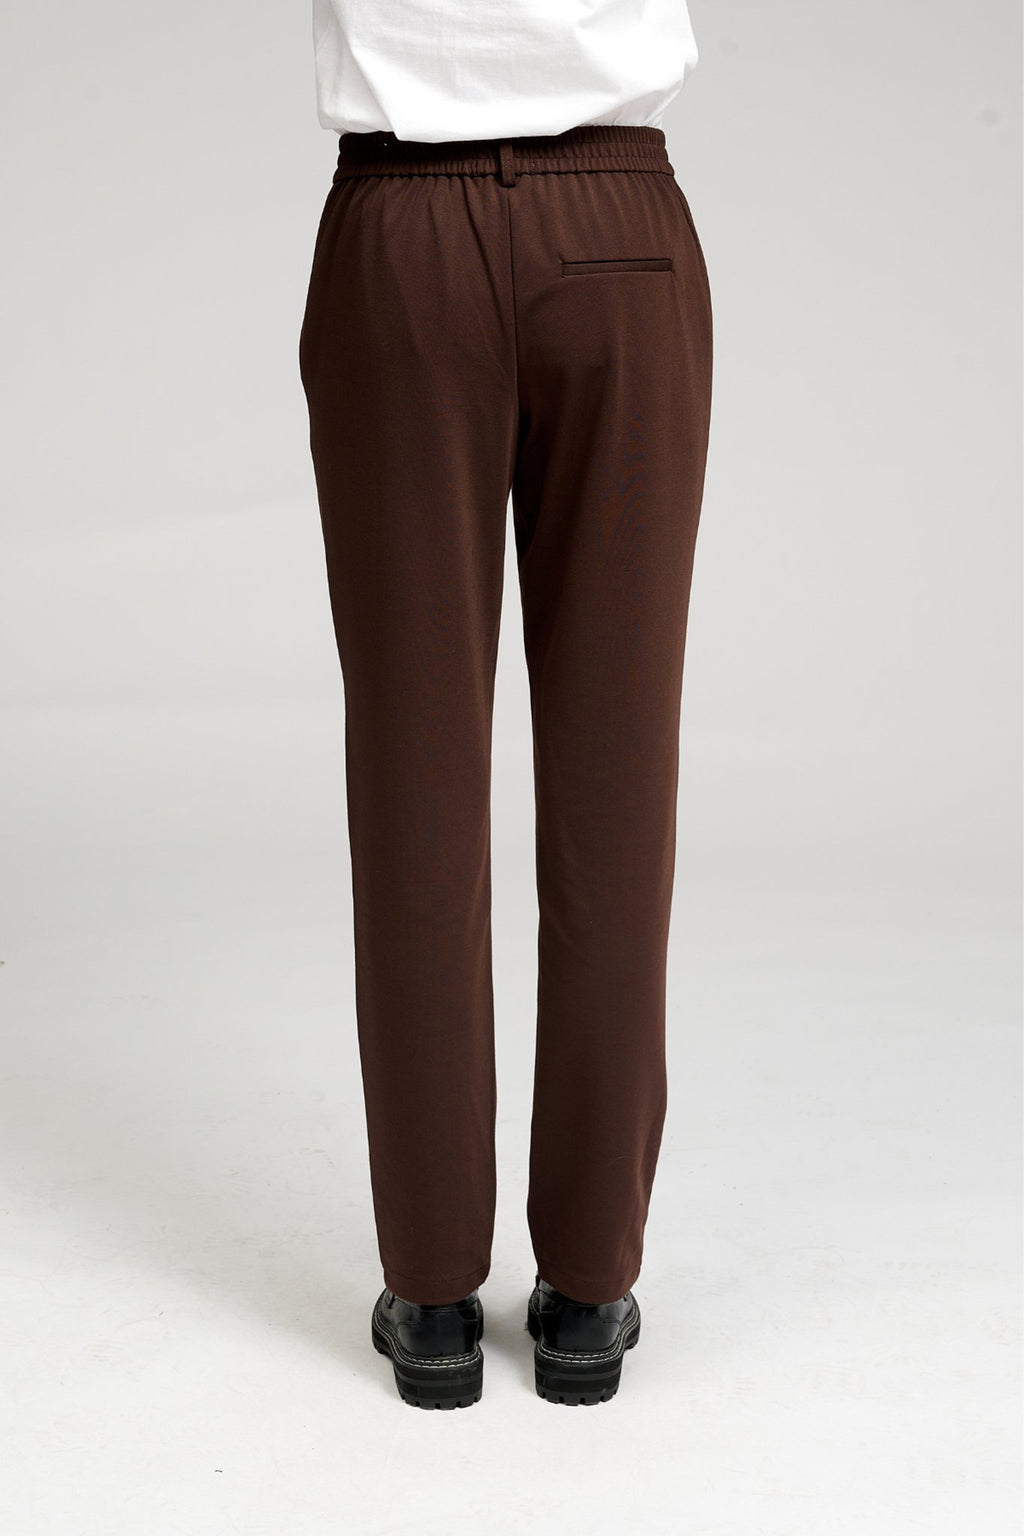 原始性能裤子 - 深棕色